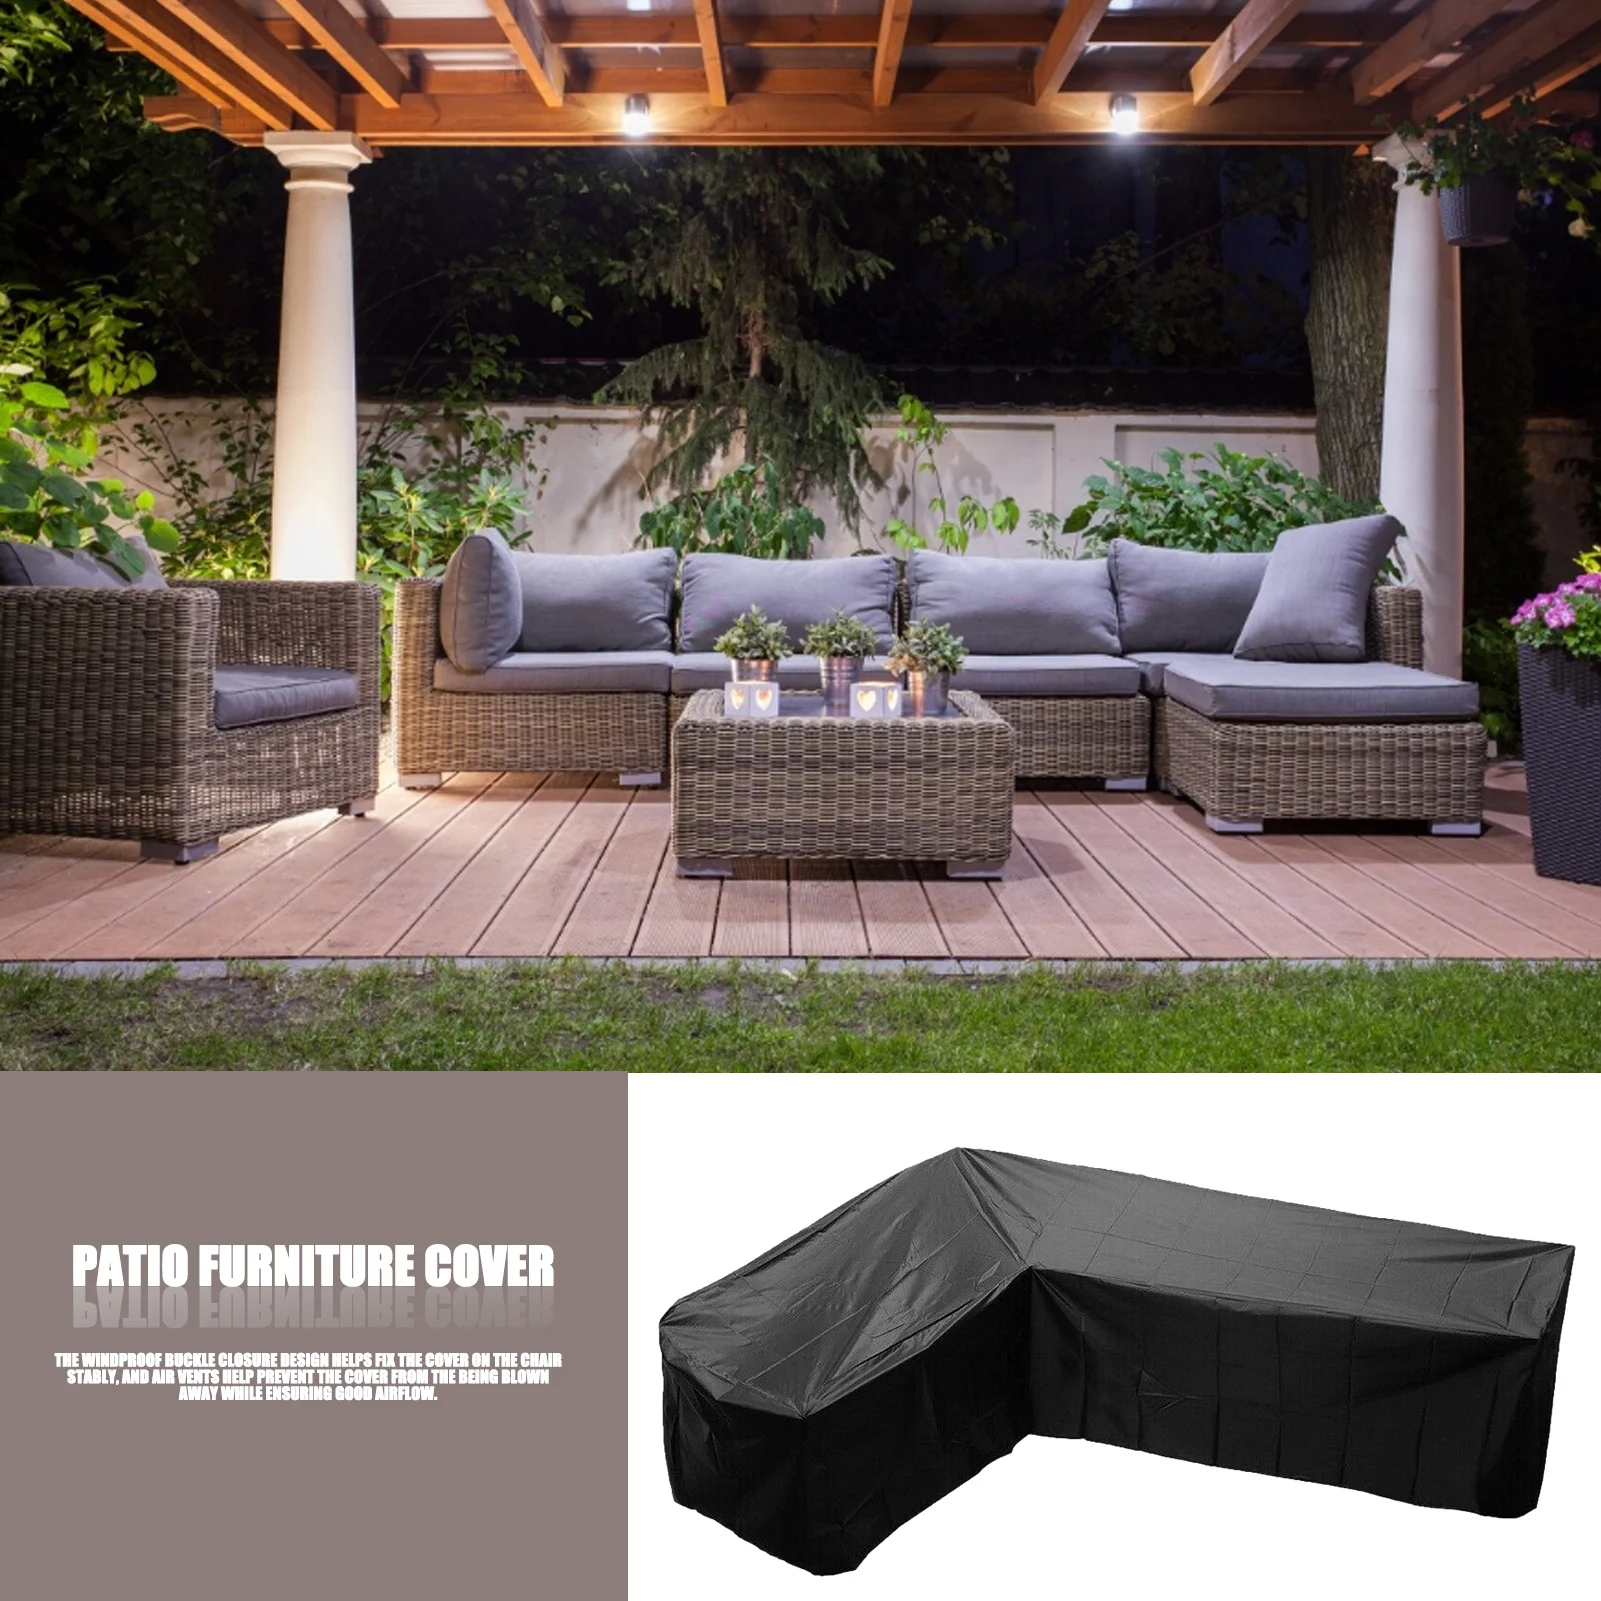 Waterproof Garden Rattan Corner Furniture Cover Outdoor Sofa Protective L